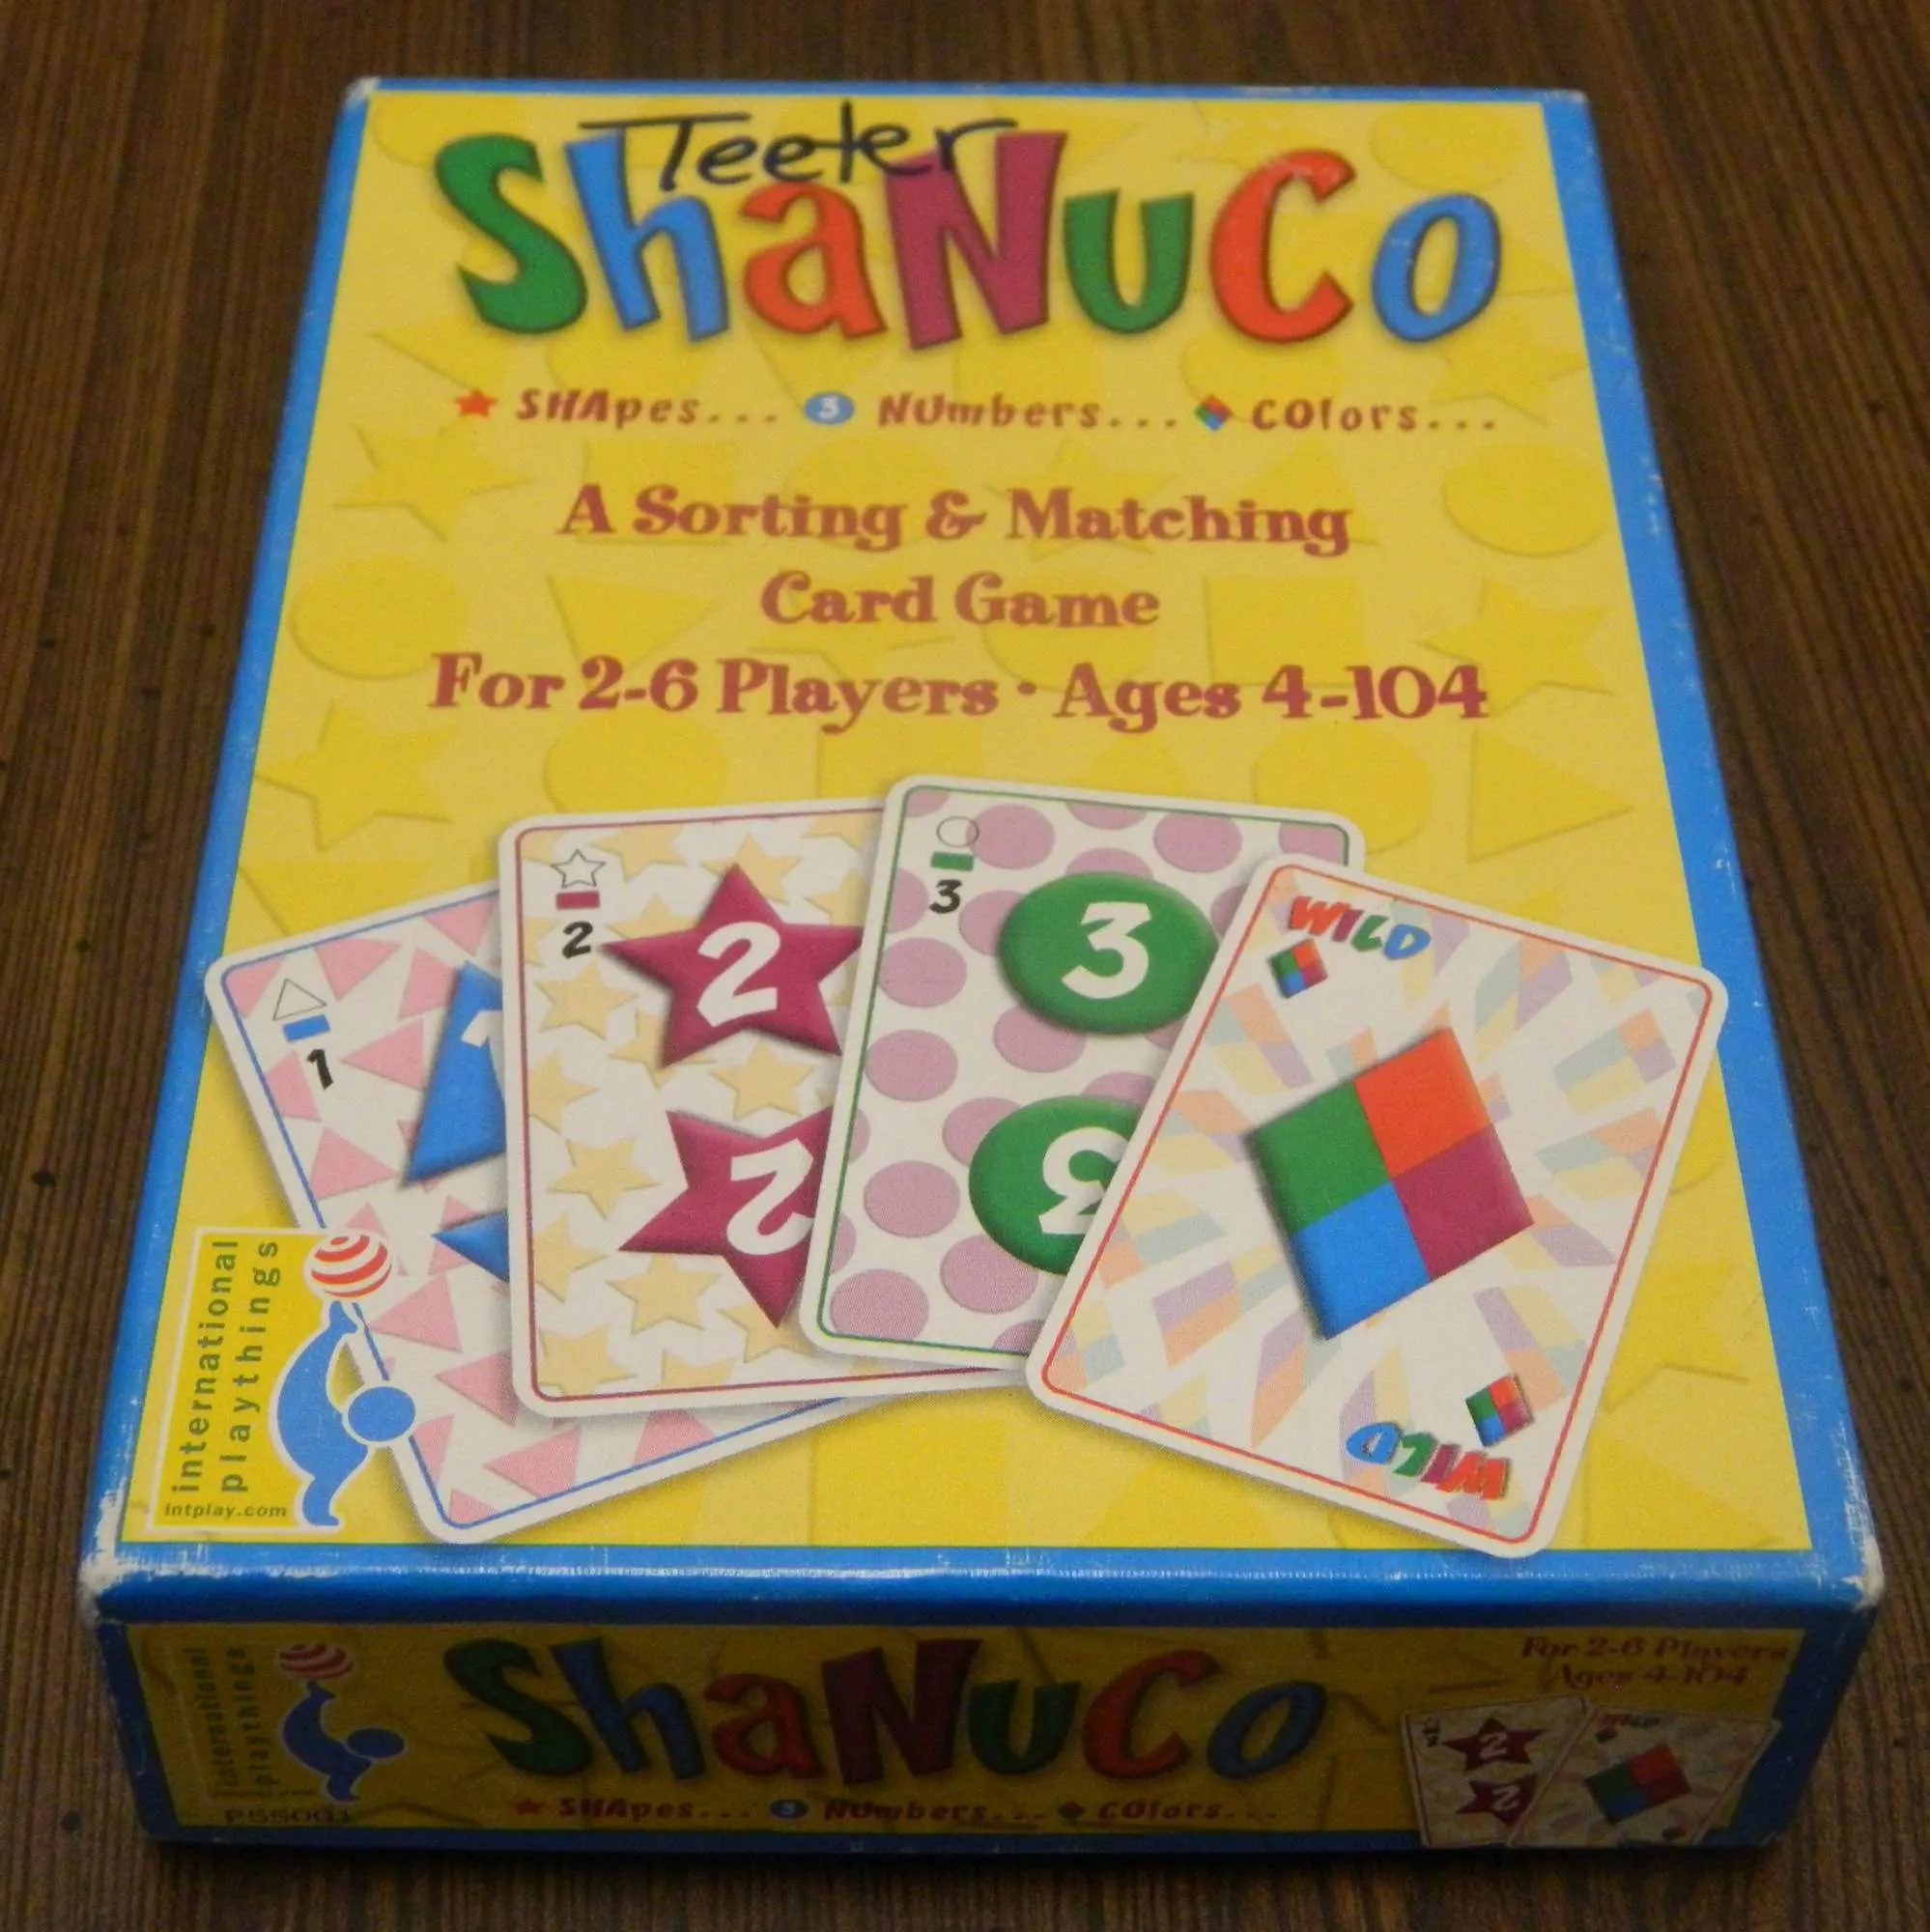 Shanuco Box